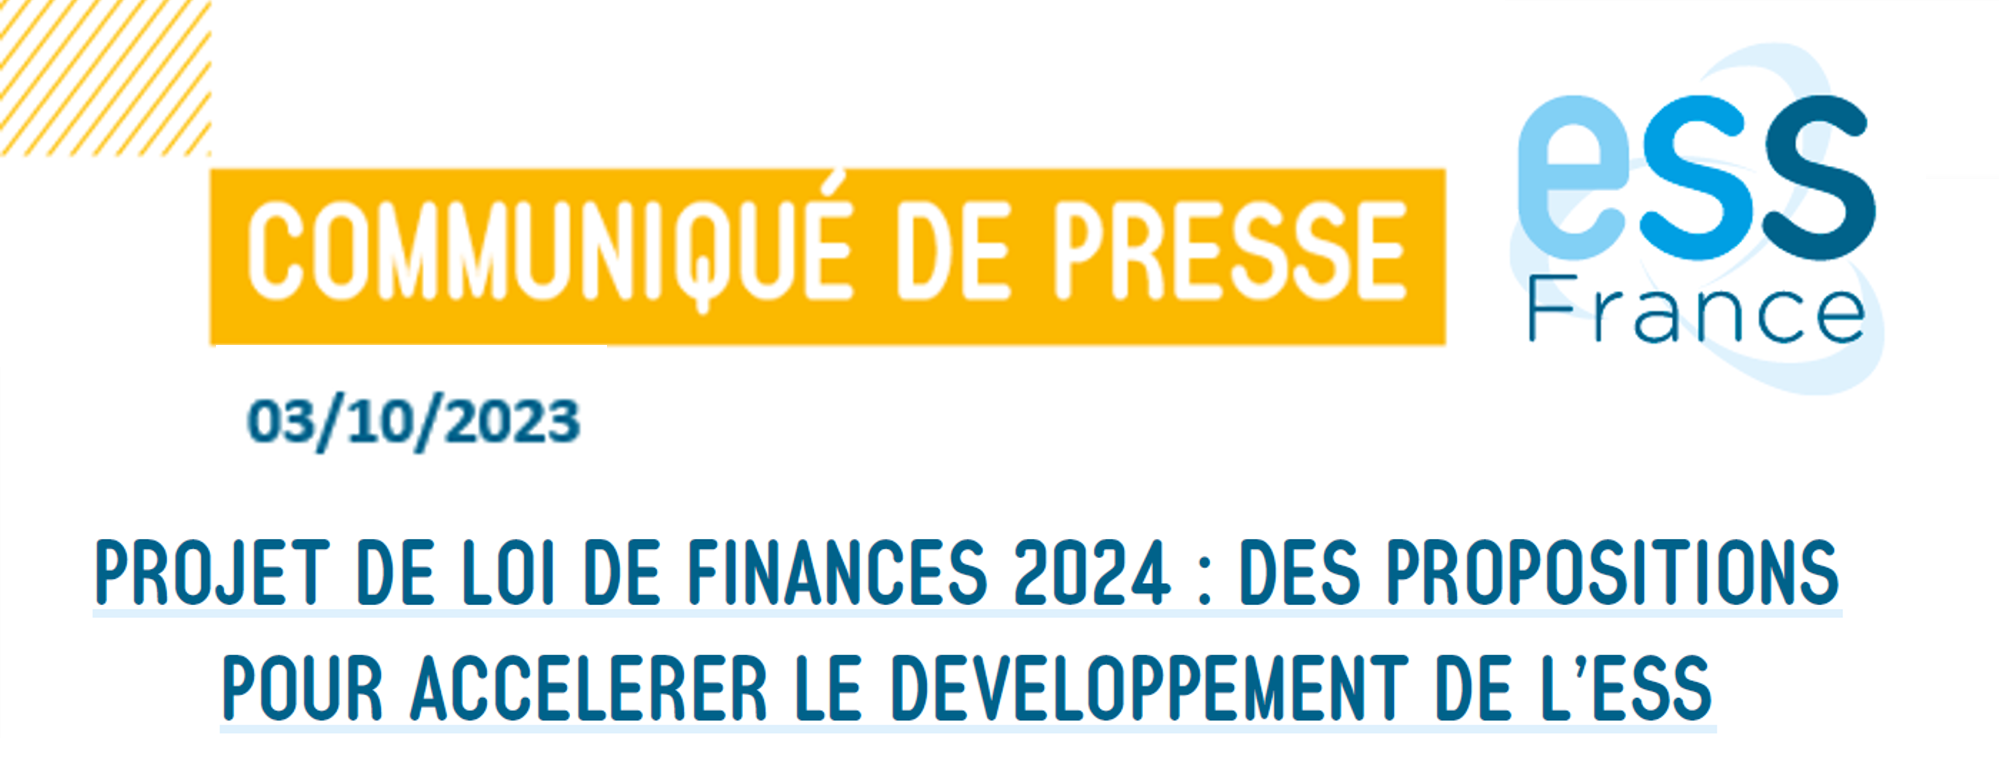 CP d'ESS France · Projet de loi de finances 2024 : des propositions pour accélérer le développement de l'ESS